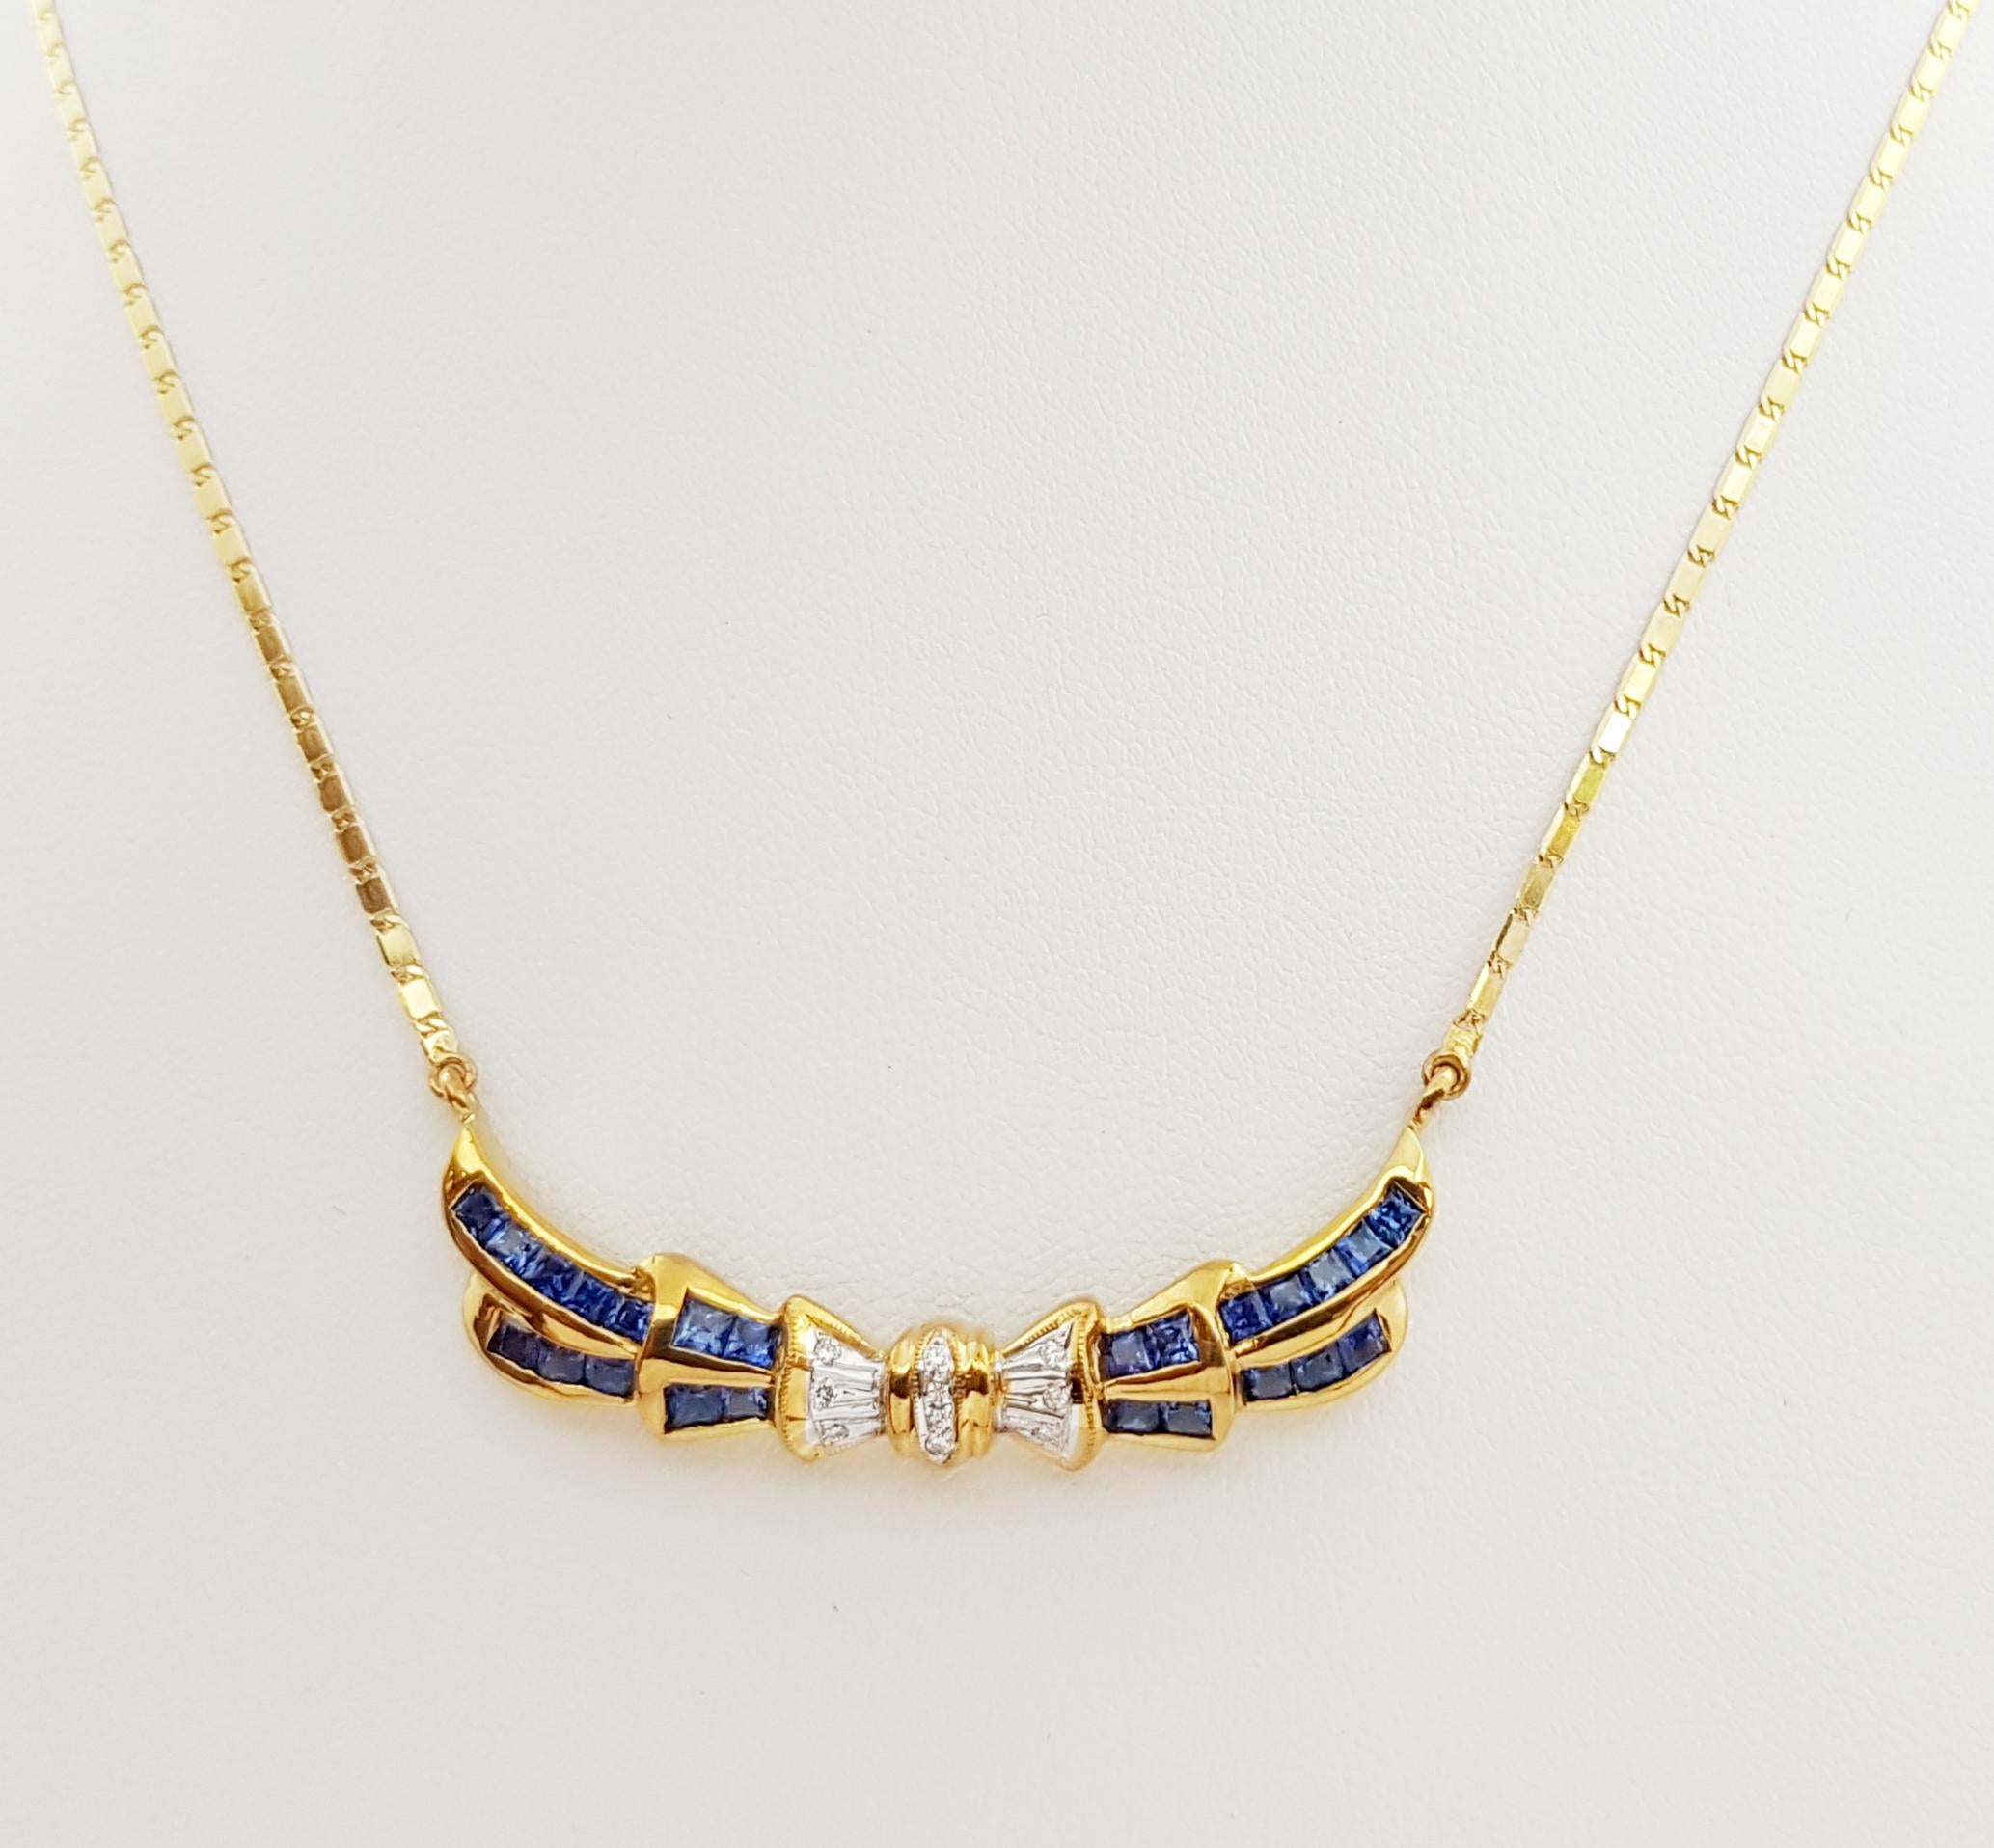 Blauer Saphir 1,36 Karat mit Diamant 0,06 Karat Halskette in 18 Karat Goldfassung

Breite: 1.4 cm 
Länge: 44,0 cm
Gesamtgewicht: 10,27 Gramm

